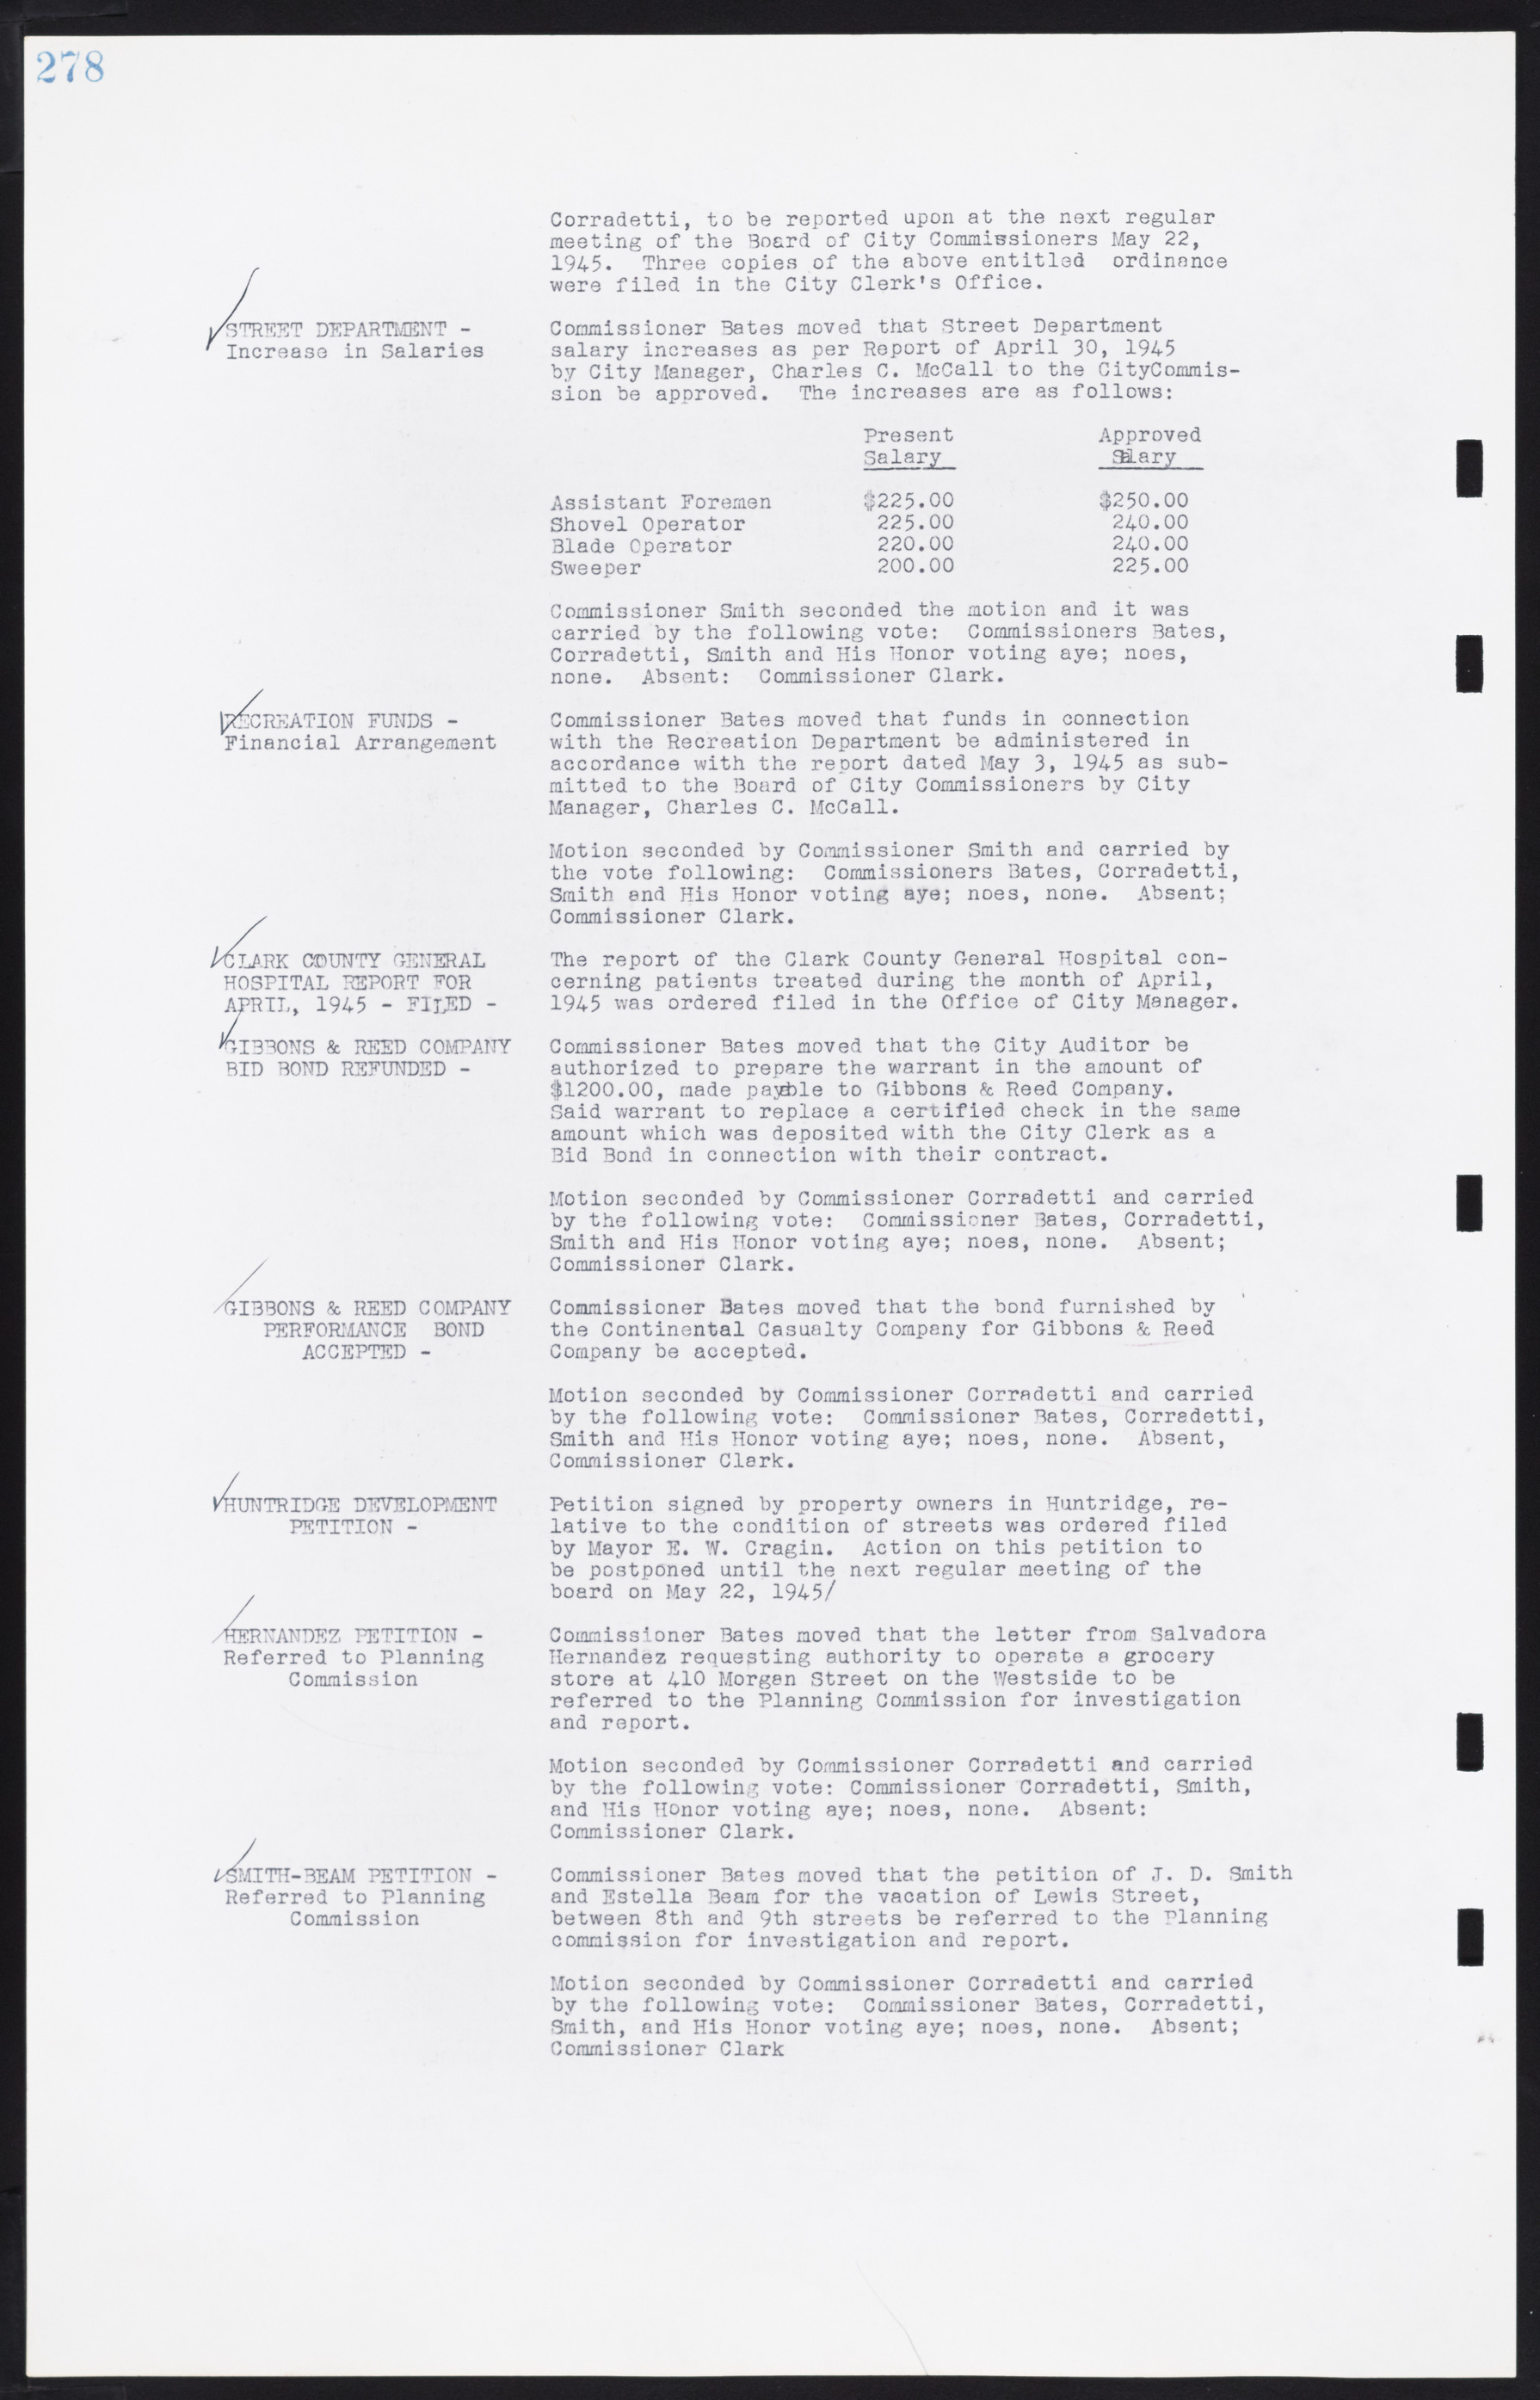 Las Vegas City Commission Minutes, August 11, 1942 to December 30, 1946, lvc000005-300